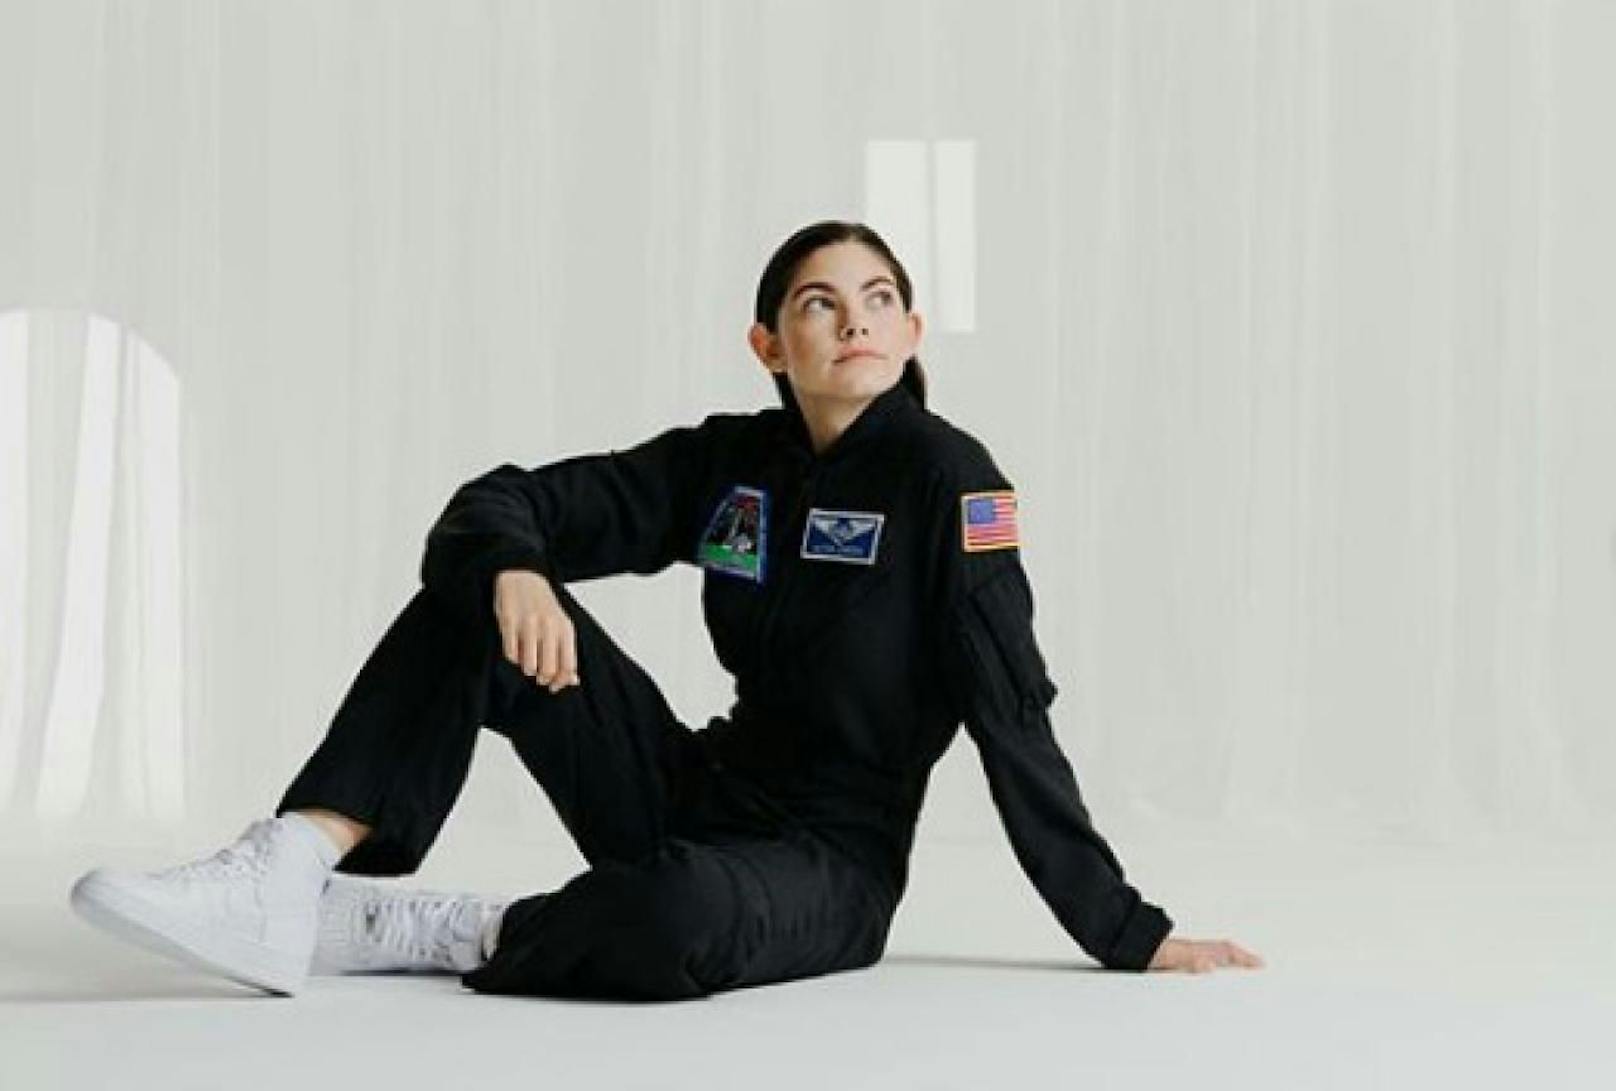 Die 18-jährige Alyssa Carson hat einen ambitionierten Traum: Sie möchte die erste Astronautin sein, die am Mars landet. 